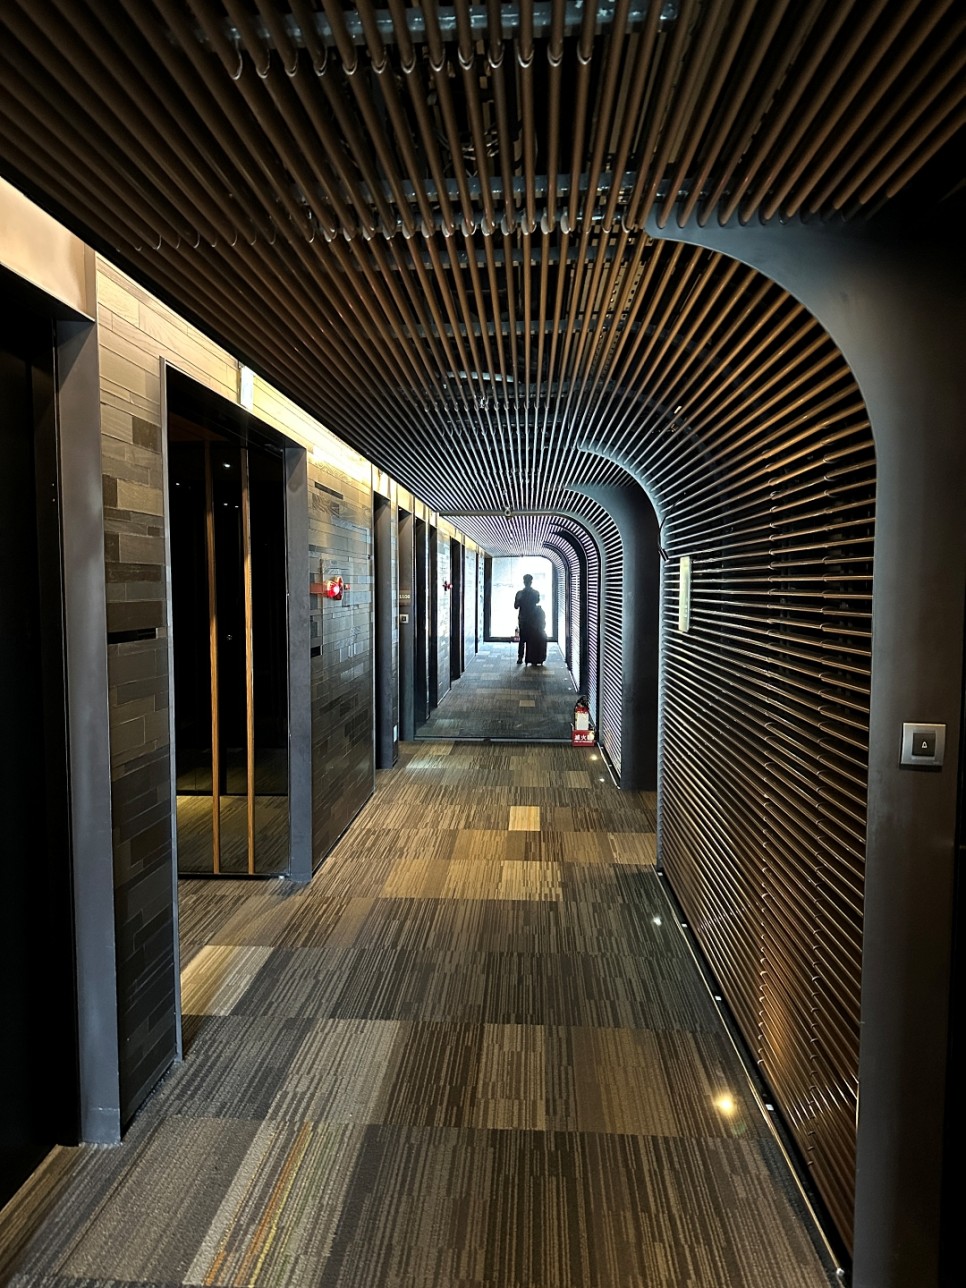 대만호텔 최대 5만원 할인쿠폰 타이베이 자유여행 호텔 추천 알로프트 중산